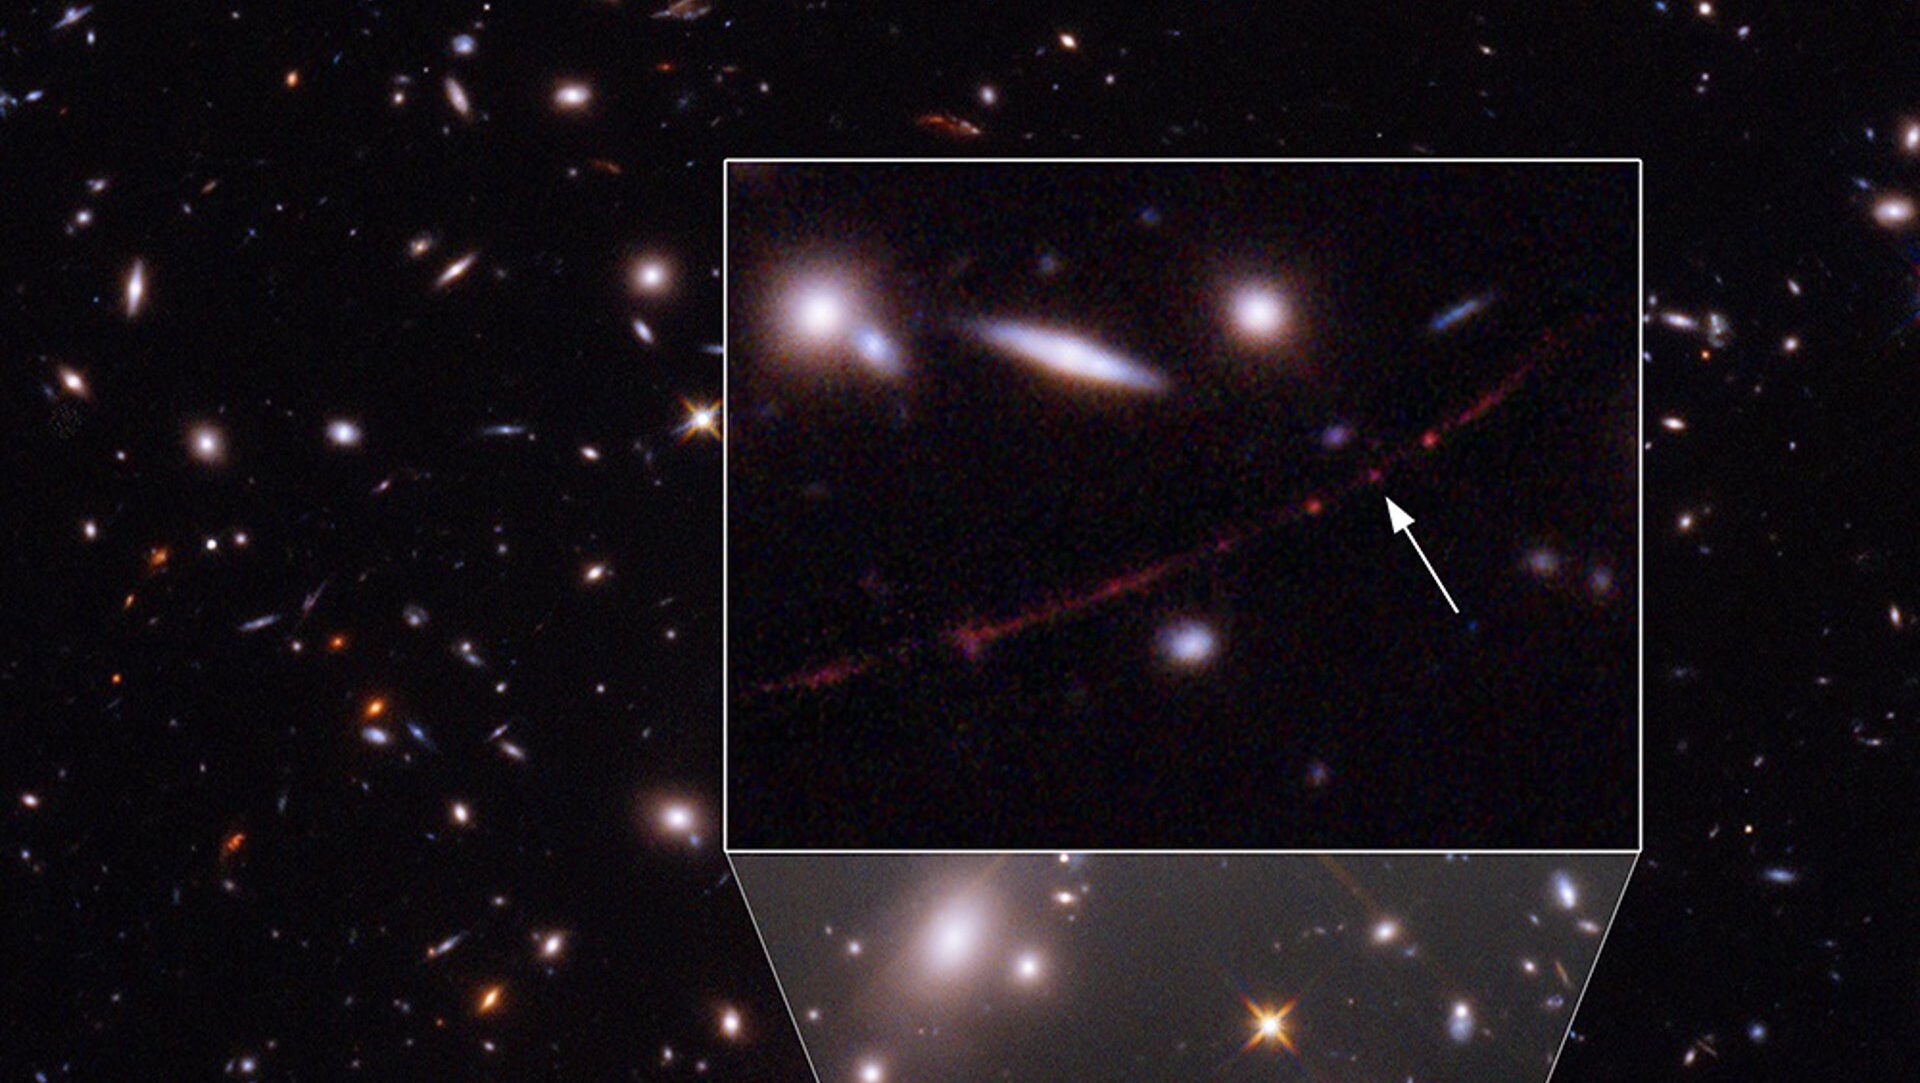 El telescopio Hubble detecta a Eärendel, la estrella más lejana jamás observada